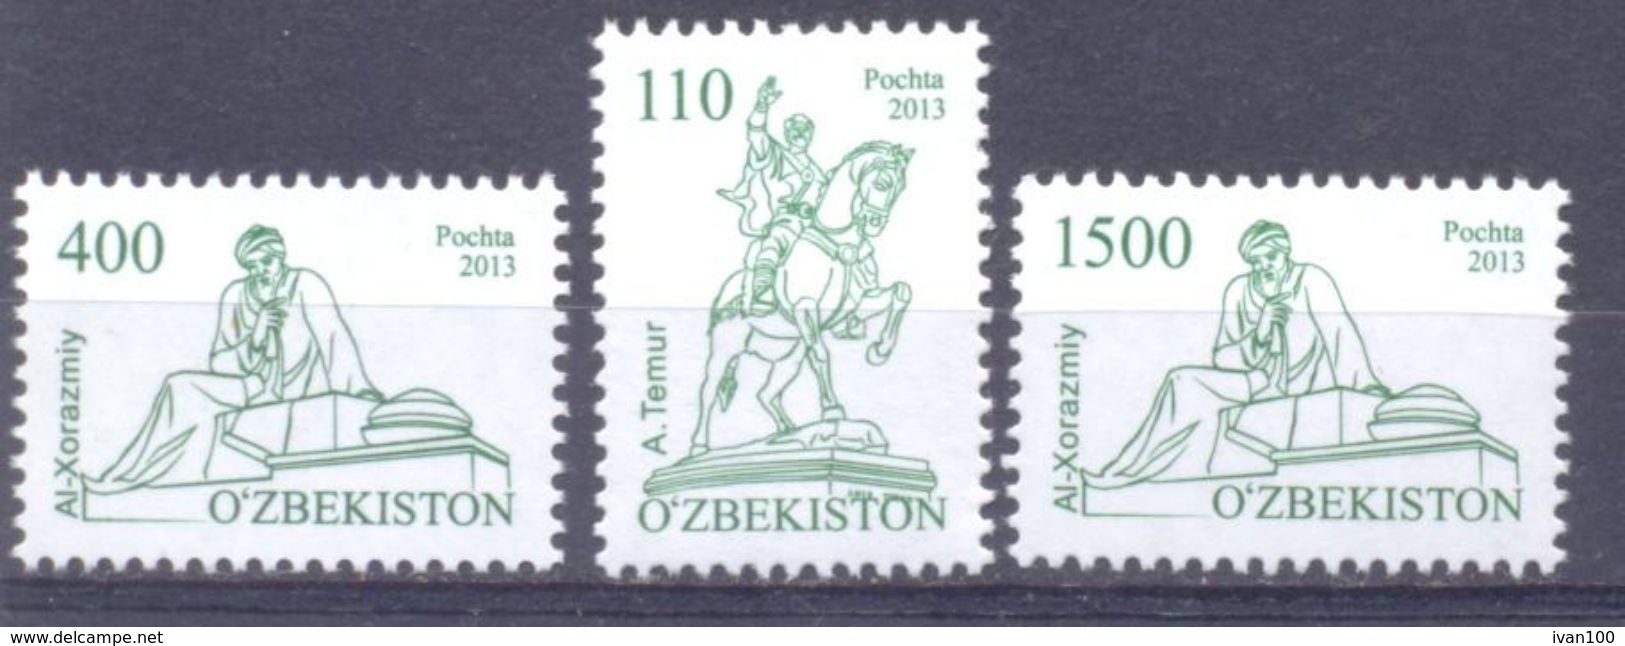 2012. Uzbekistan, Definitives, Monuments, 3v, Mint/** - Ouzbékistan